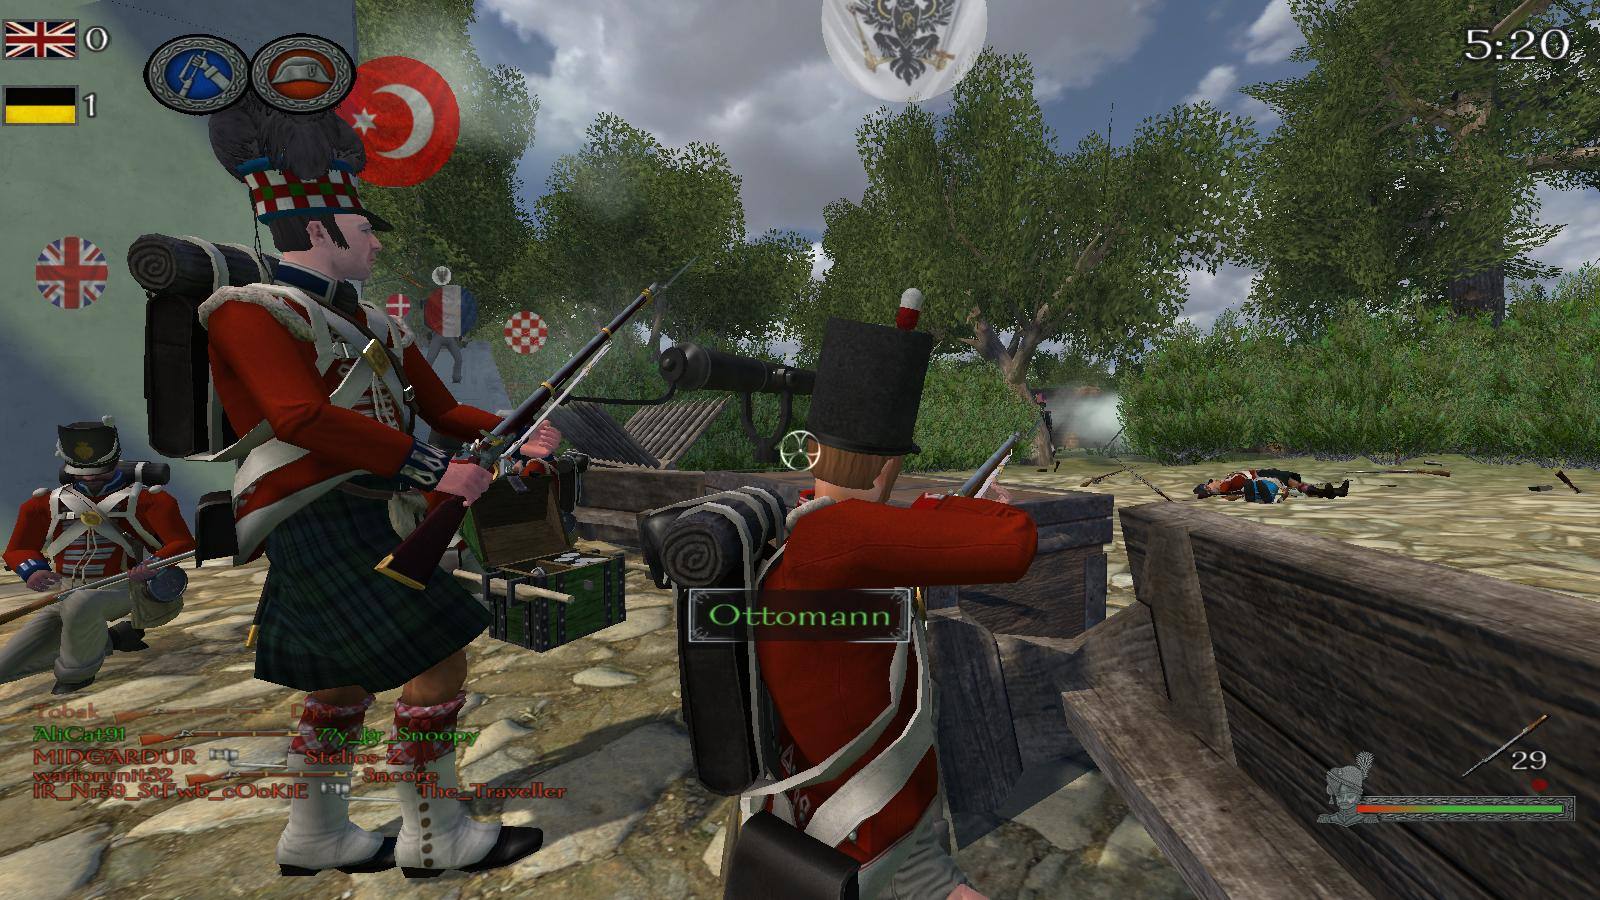 Mount & Blade Warband: Napoleonic Wars